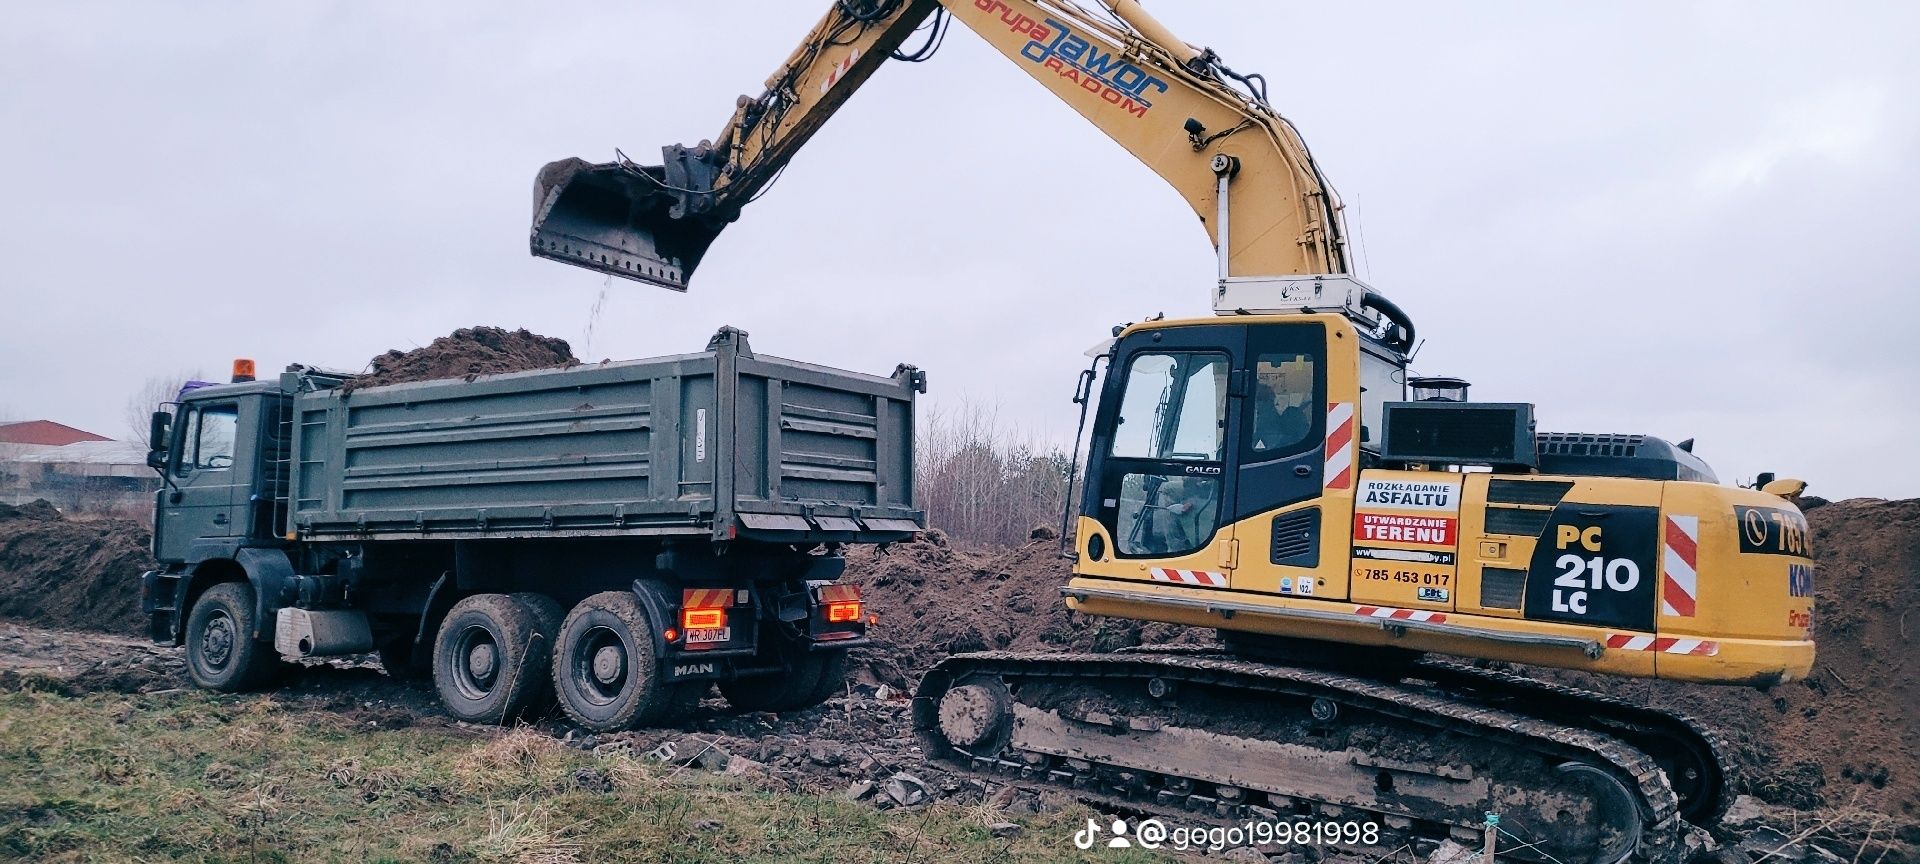 Koparka Wywrotka usługi wywóz gruzu  gliny sprzątanie terenu rozbiórki